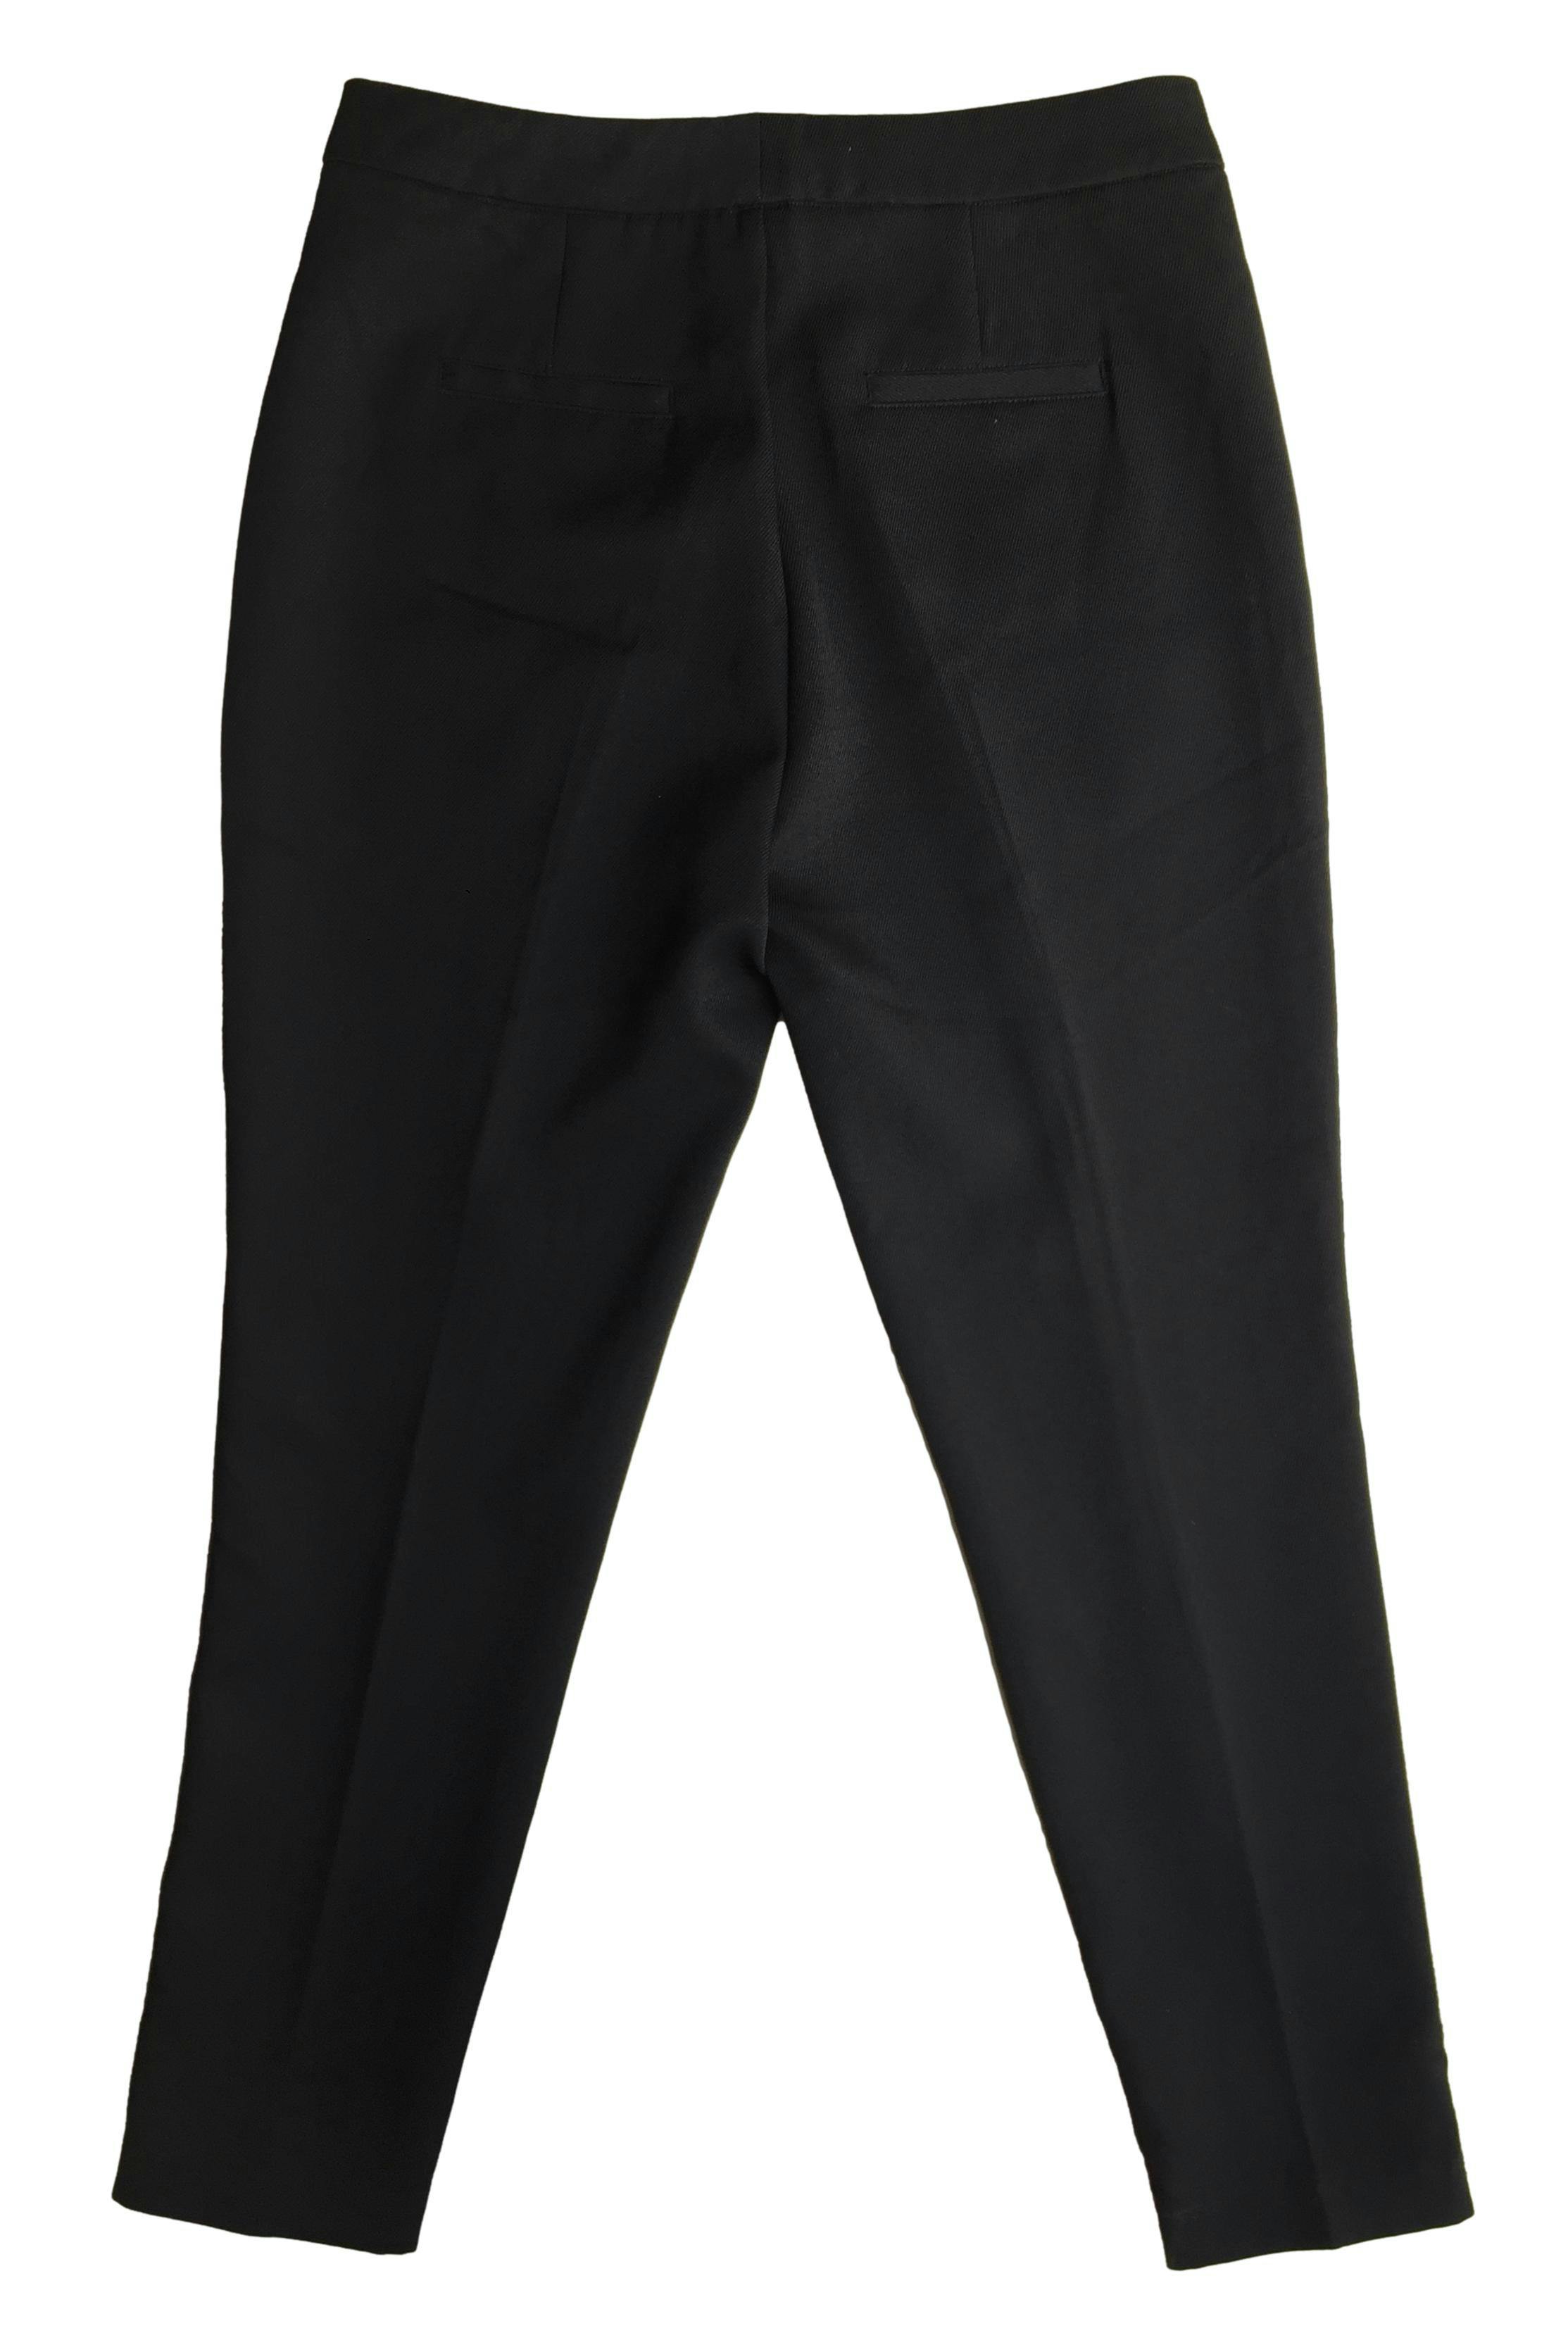 Pantalón Basement negro, aplicaciones doradas en los laterales, bolsillo y cierre delantero. Cintura: 74cm, Tiro: 29cm, Largo: 96cm